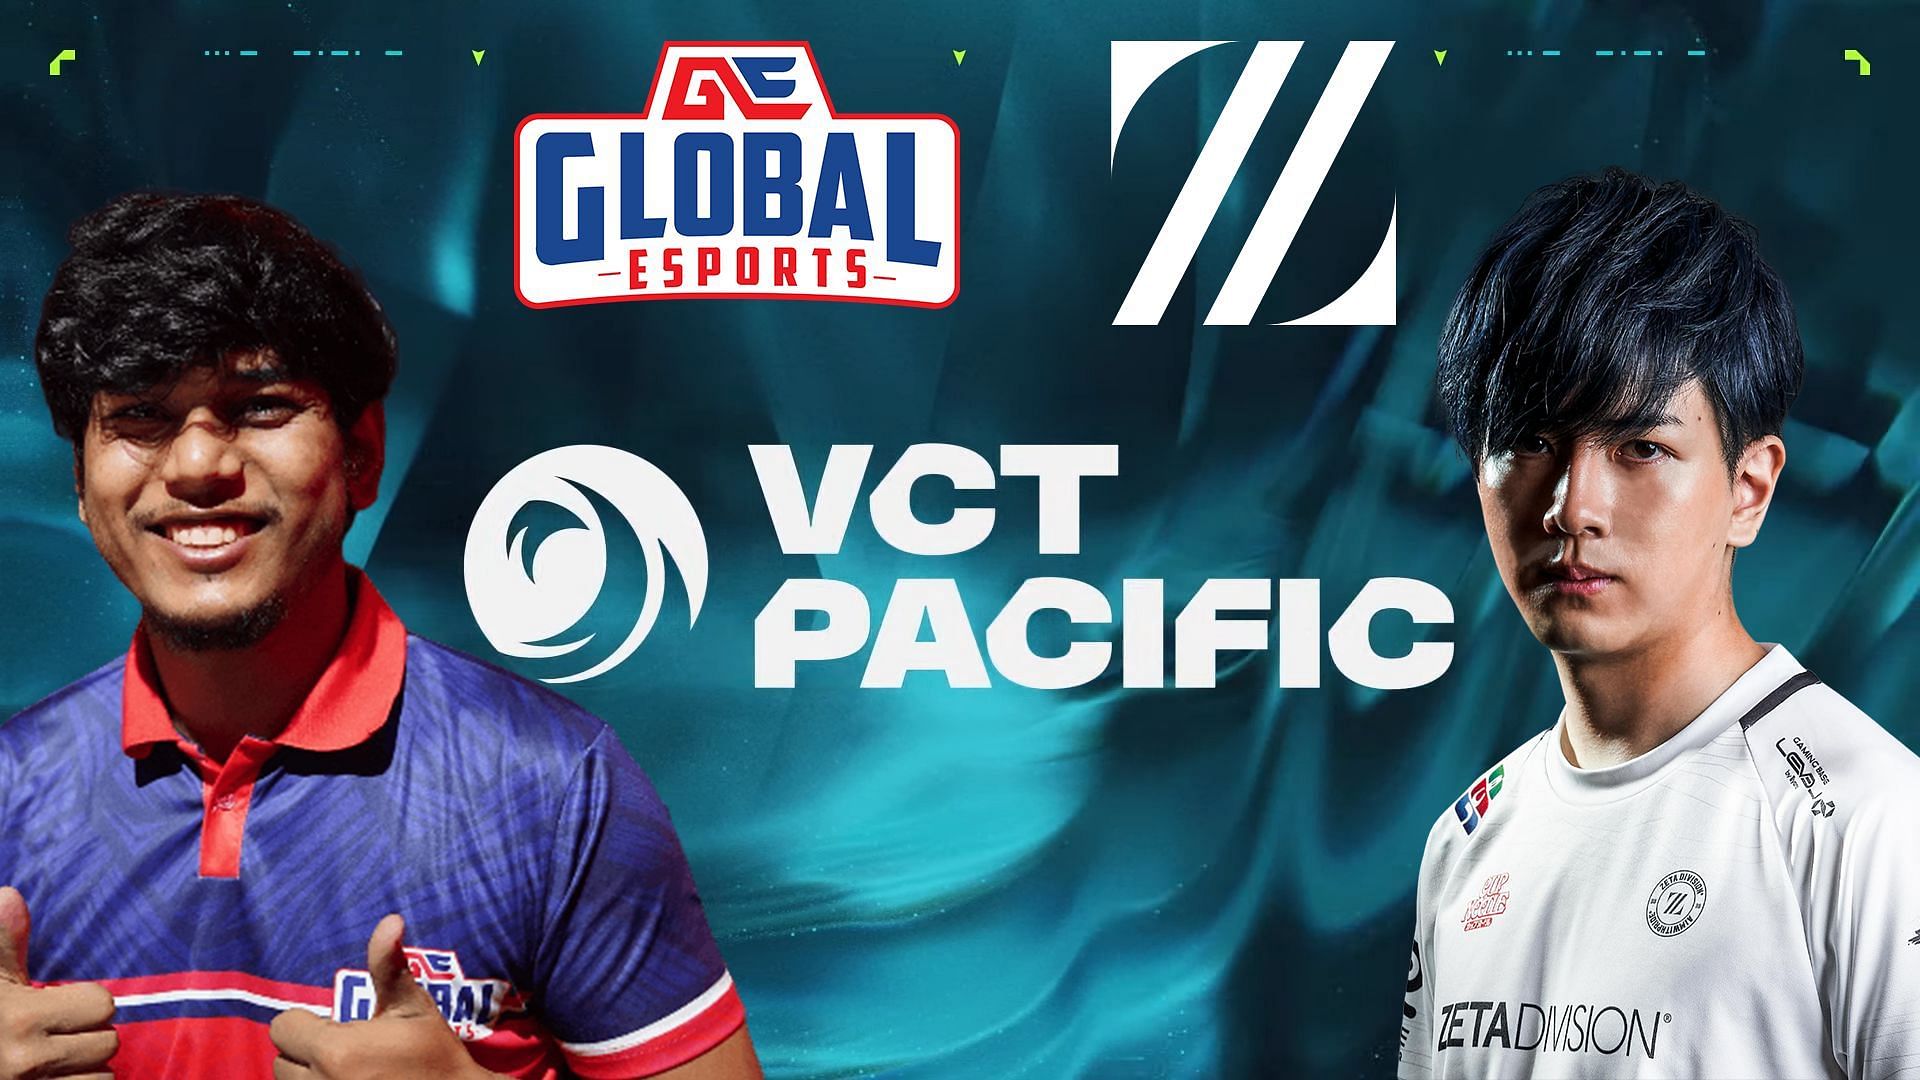 Global Esports vs ZETA DIVISION at VCT Pacific Kickoff (Image via Riot Games, Global Esports and ZETA DIVISION)